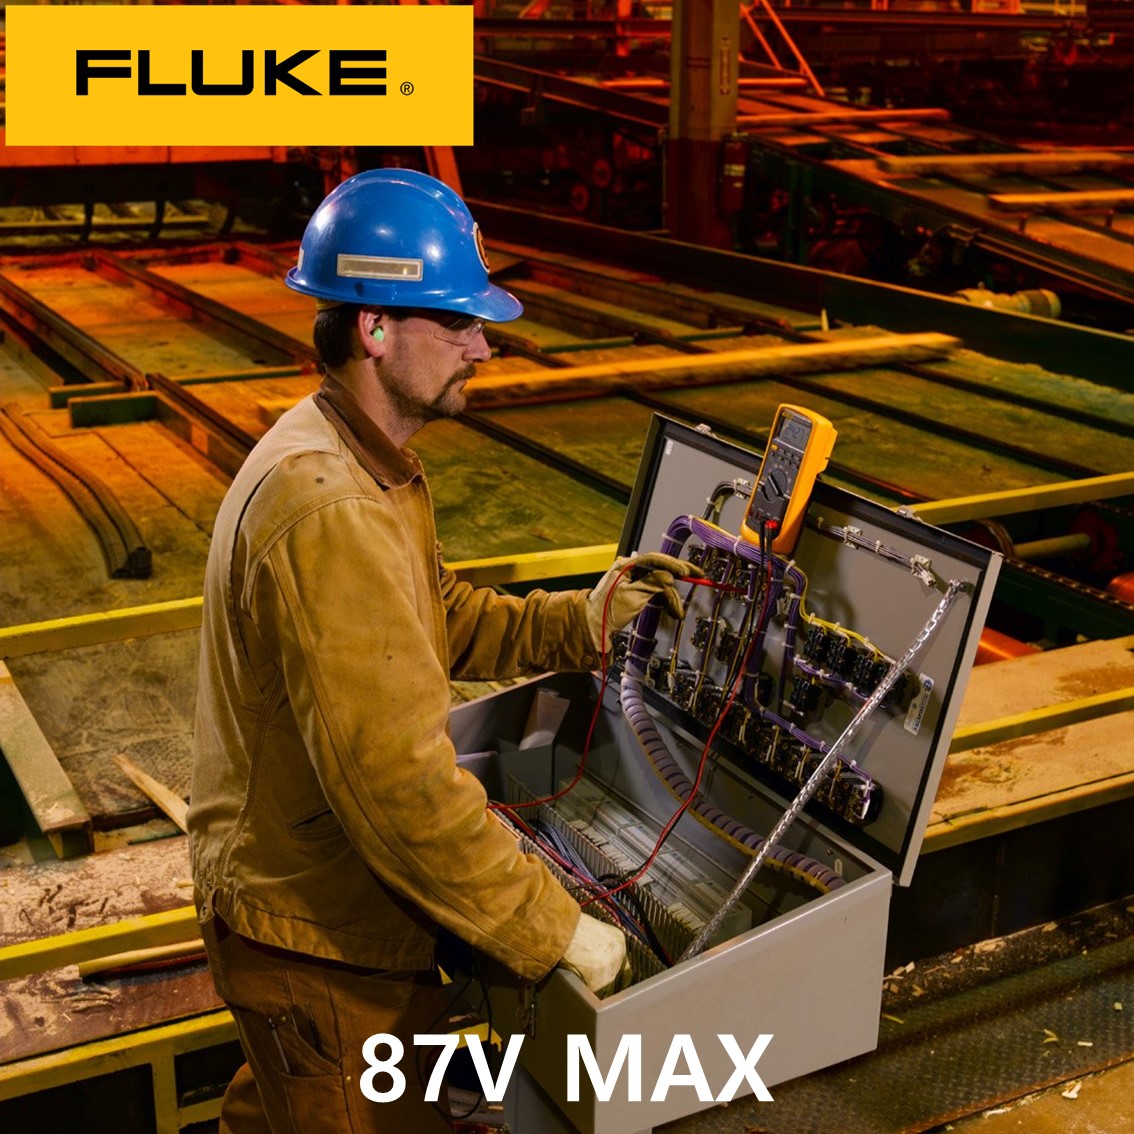 [ FLUKE 87V MAX ] 정품 플루크 디지털 멀티미터, 멀티메타, 디지털테스터, 방수방진 IP67